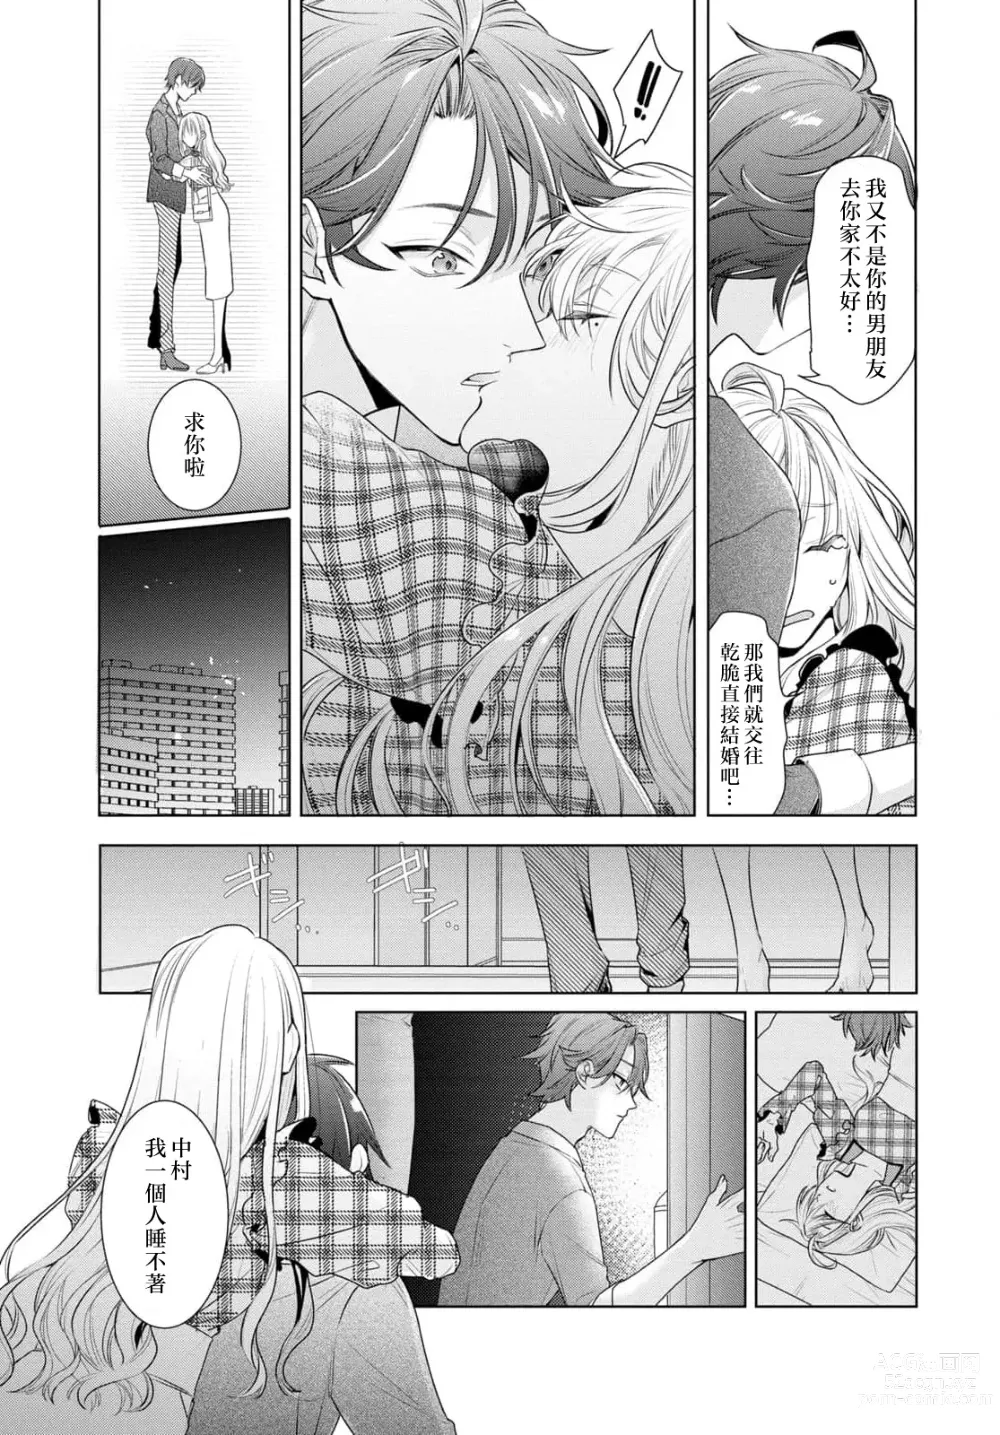 Page 9 of manga 过剩爱情让我今晚也体内高潮！？试婚夫妻的甜蜜情事 1-3